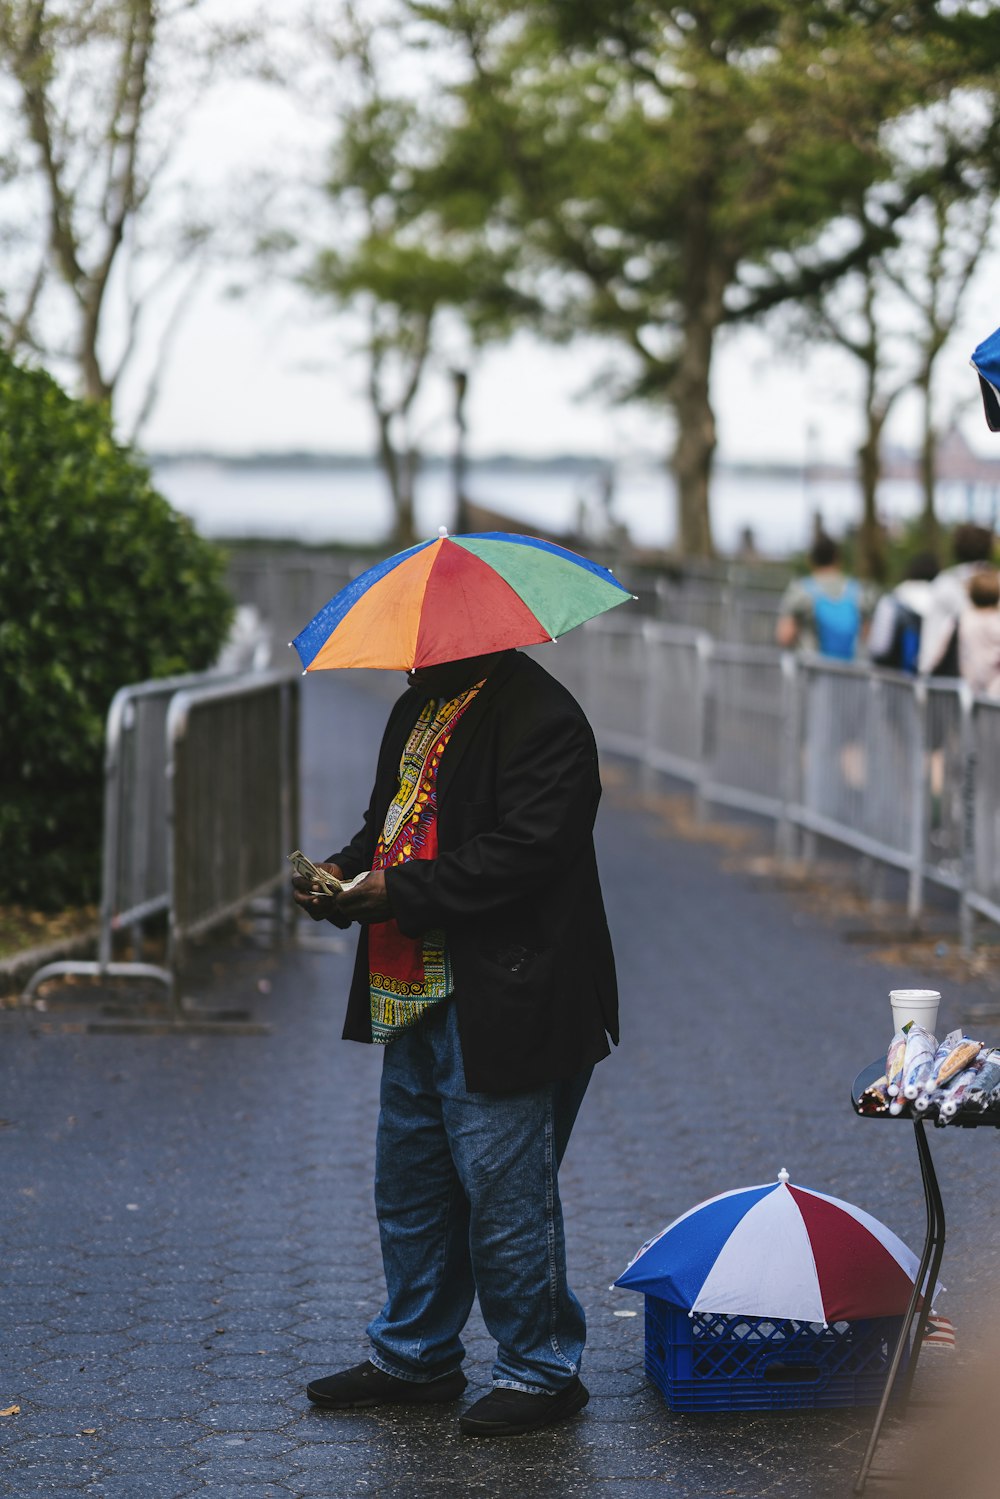 色とりどりの傘をさした男が歩道に立っていて、昼間は他の人が歩いている